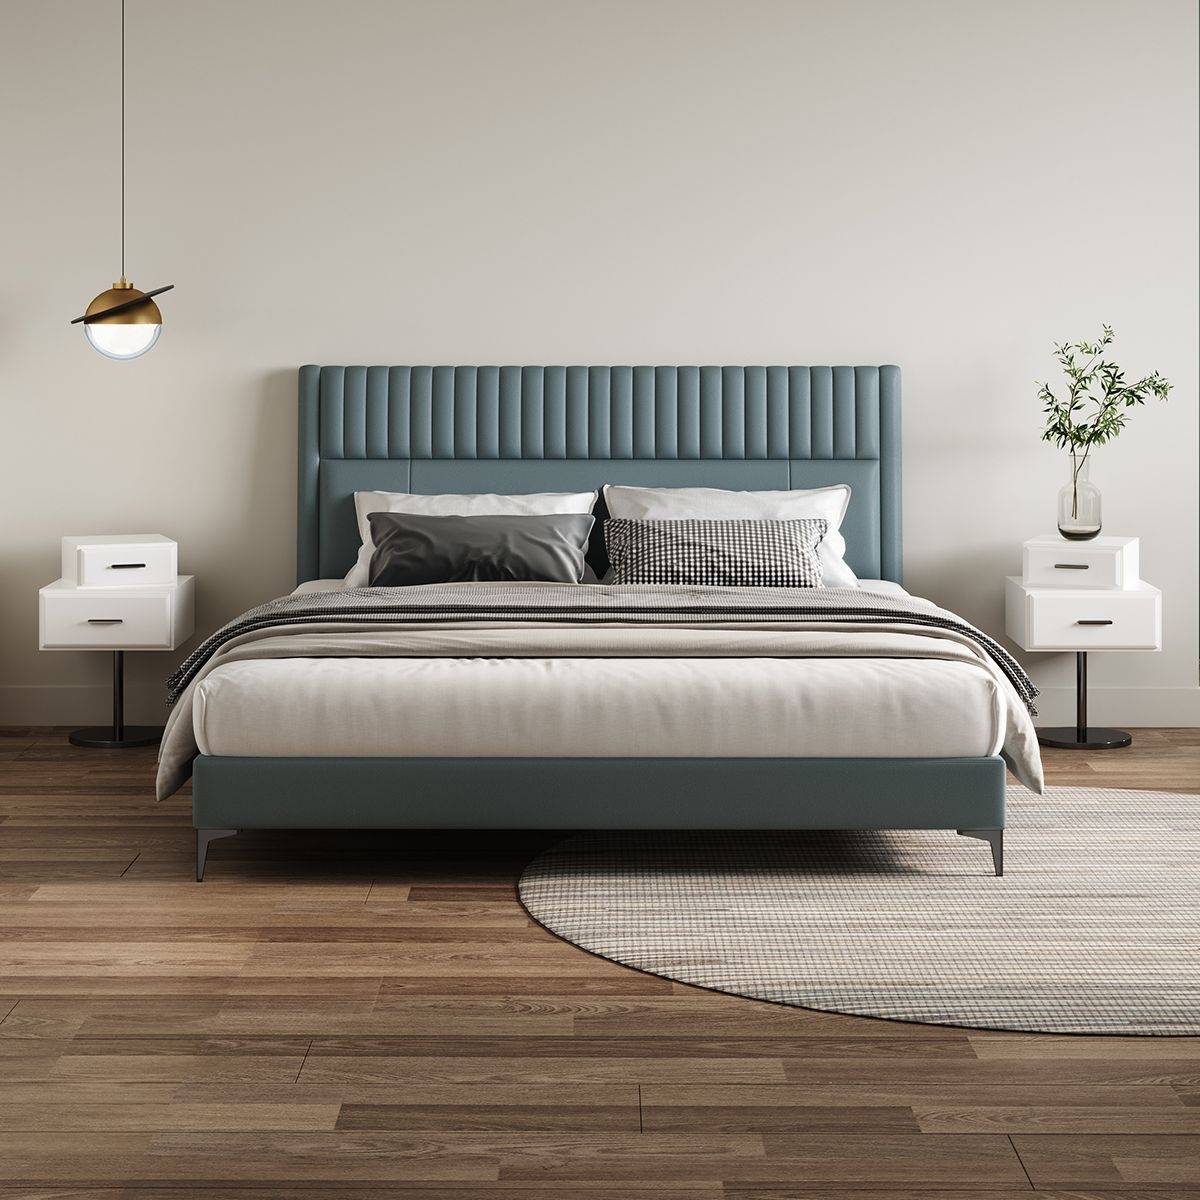 30系列 卧室时尚极简免洗科技布软床意式双人框架床(湖蓝色)